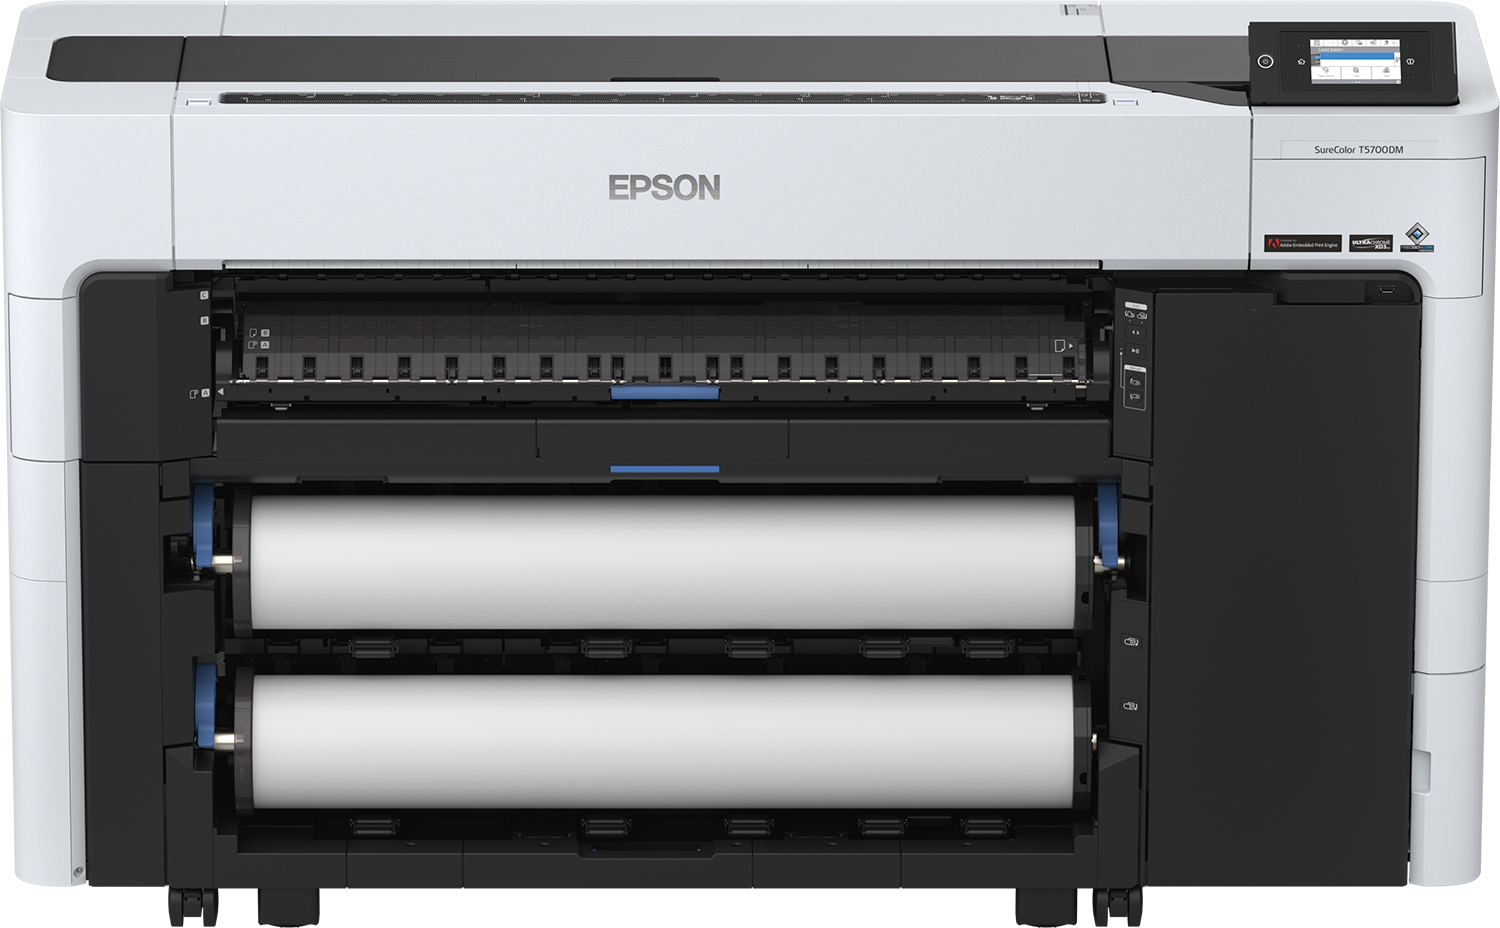 Epson SC T5700D